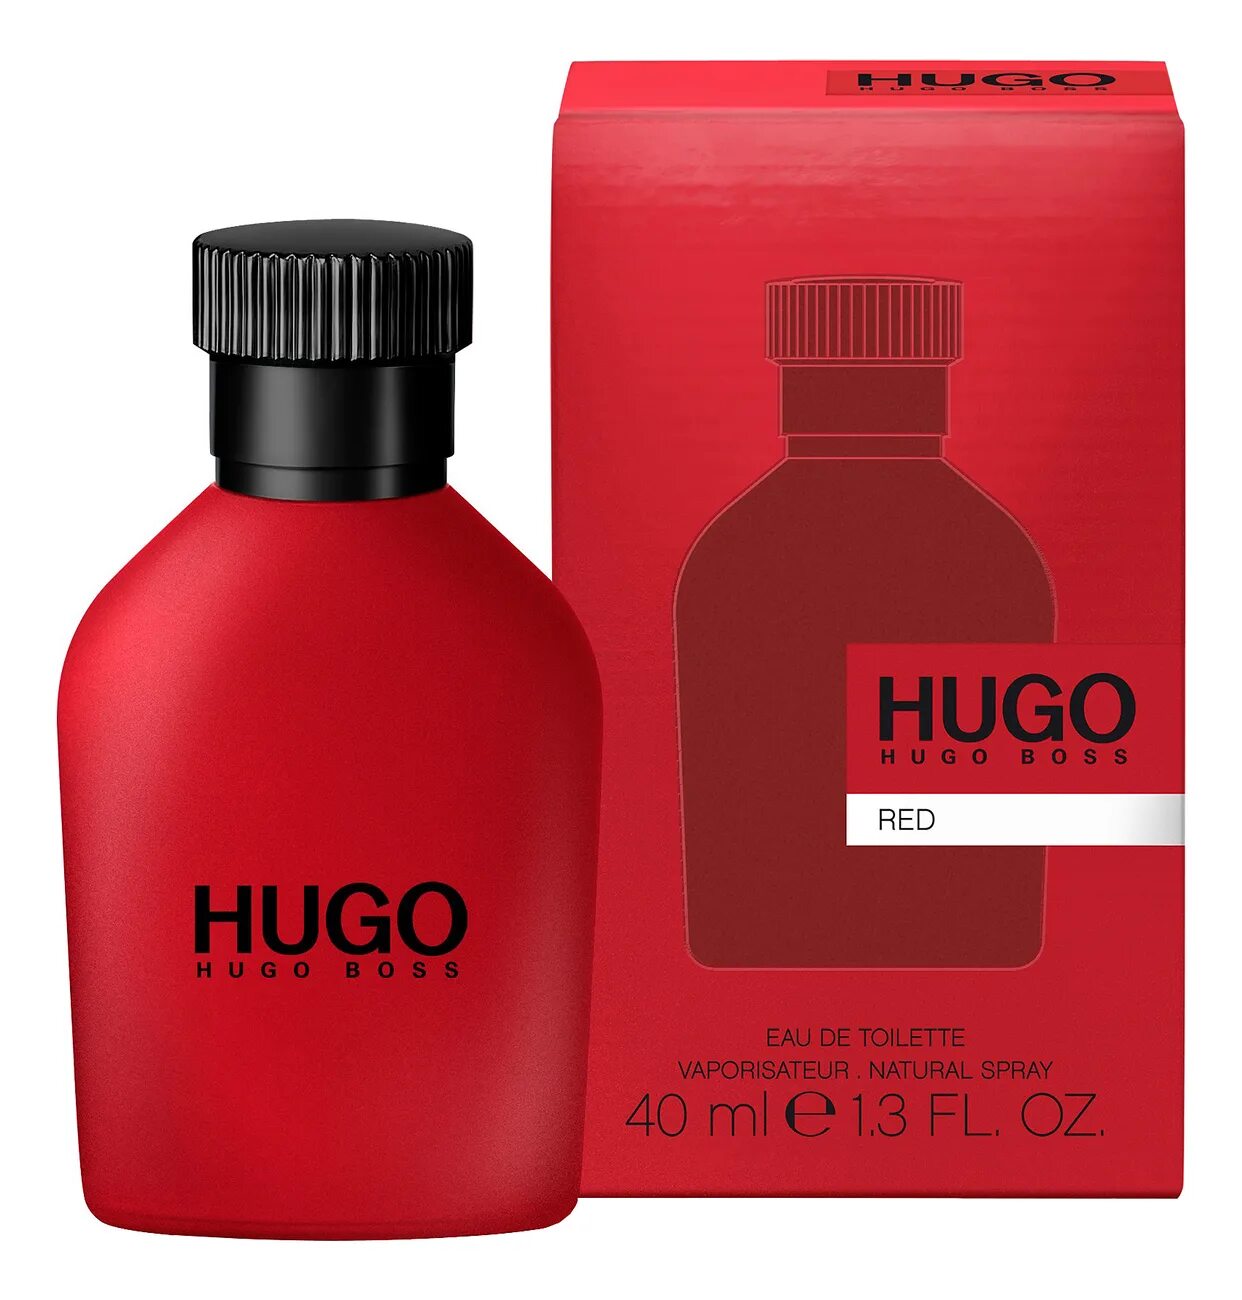 Hugo Boss "Hugo Red" EDT, 100ml. Hugo Boss Red, EDT., 150 ml. Hugo Boss Red EDT Хьюго босс ред туалетная вода 150 ml. Hugo Boss мужской Hugo туалетная вода (EDT) 40мл. Hugo перевод на русский